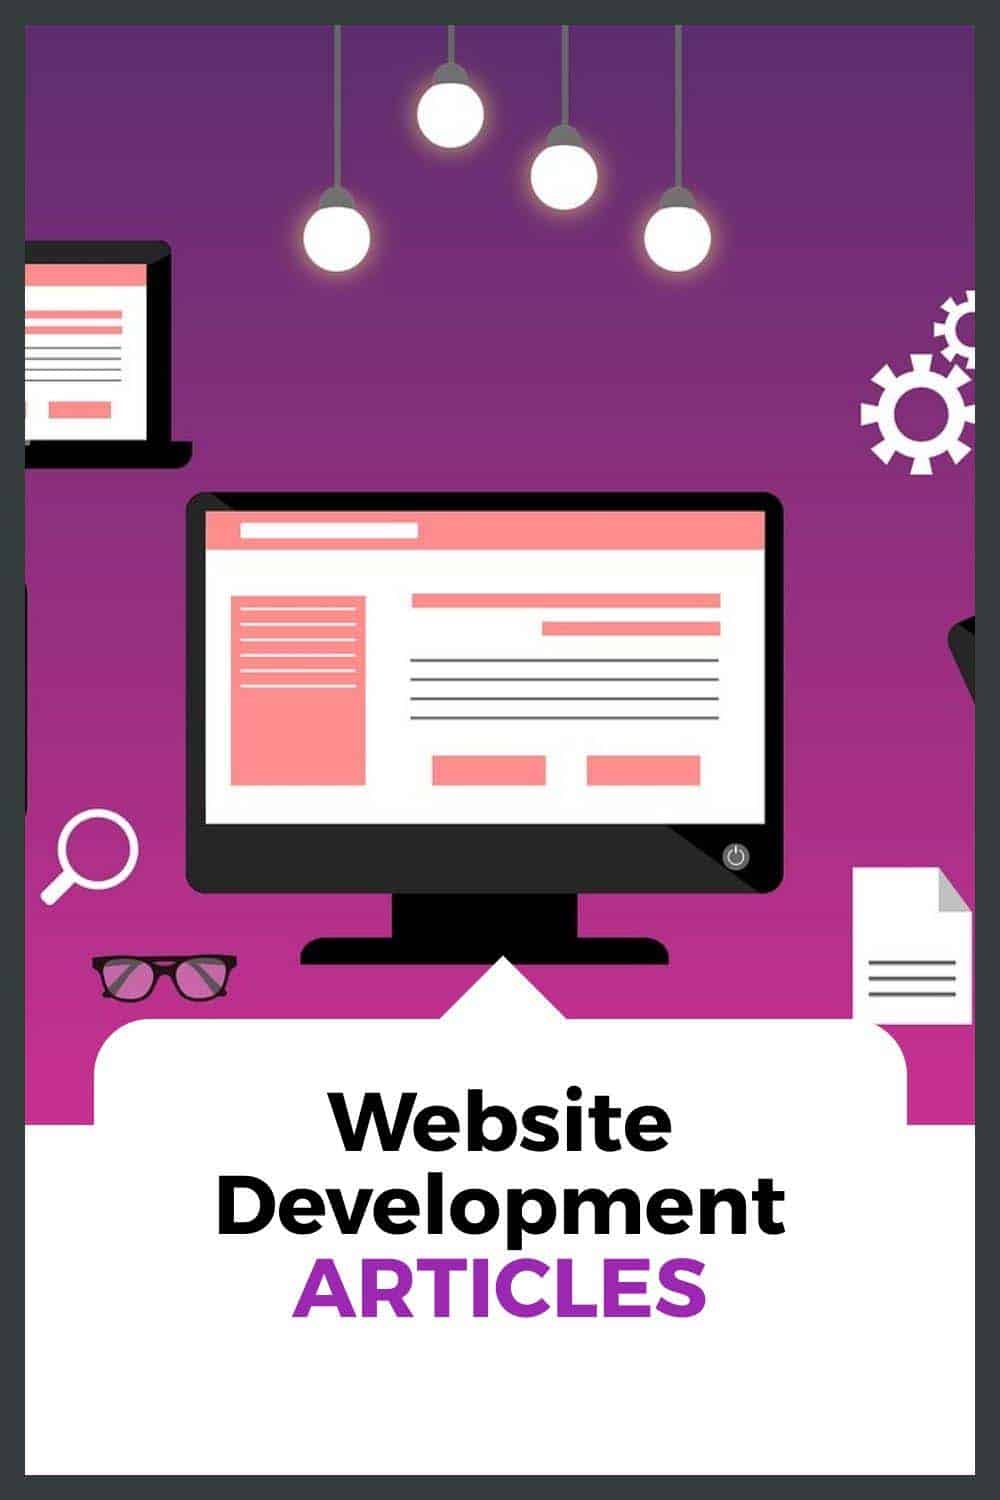 Development Build Your Website